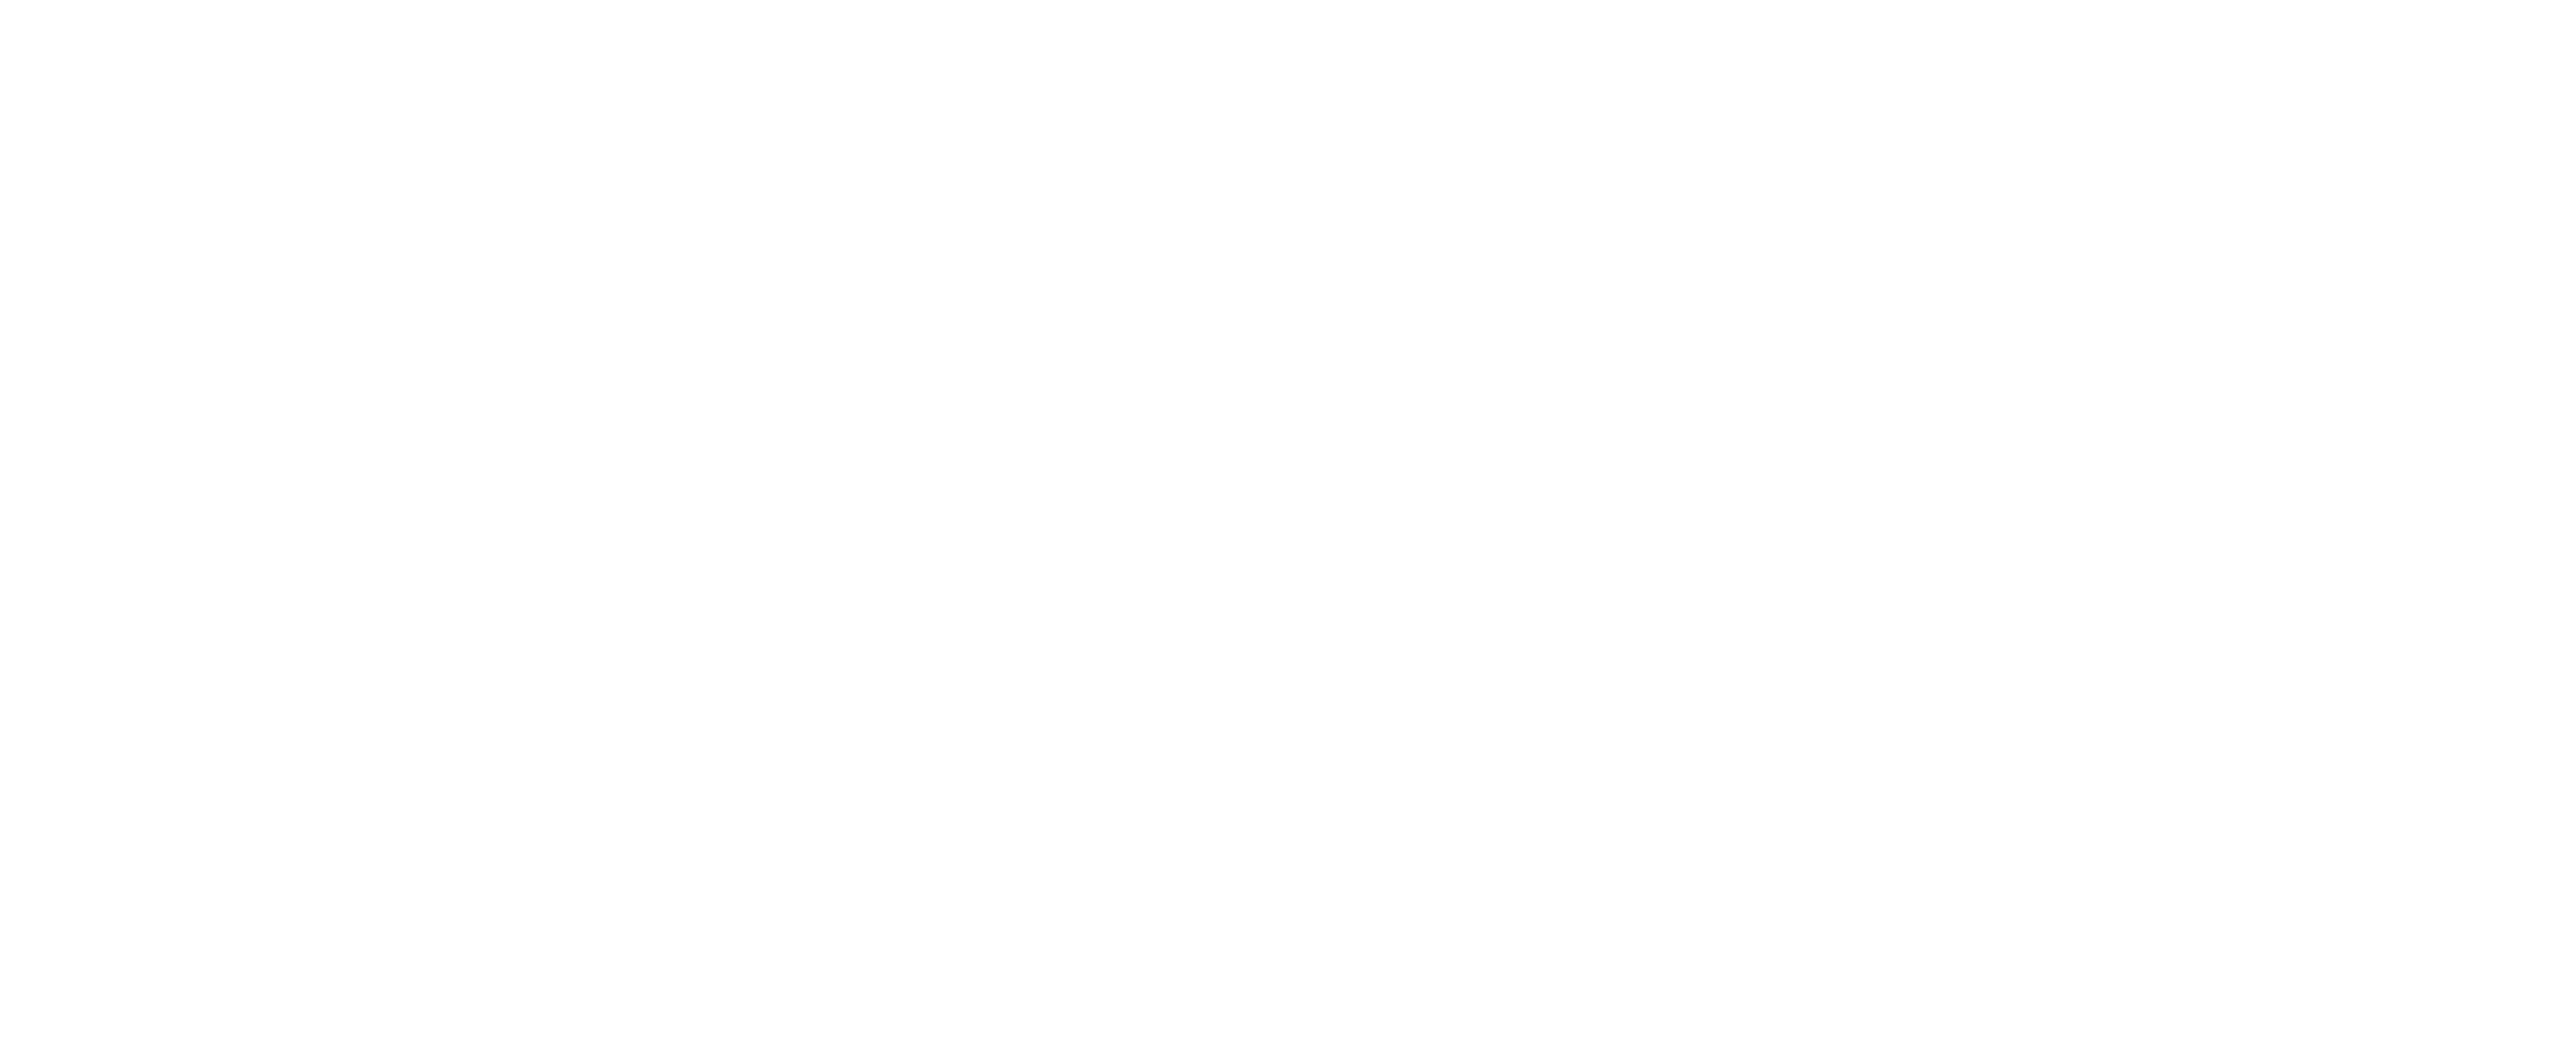 Baskets logo